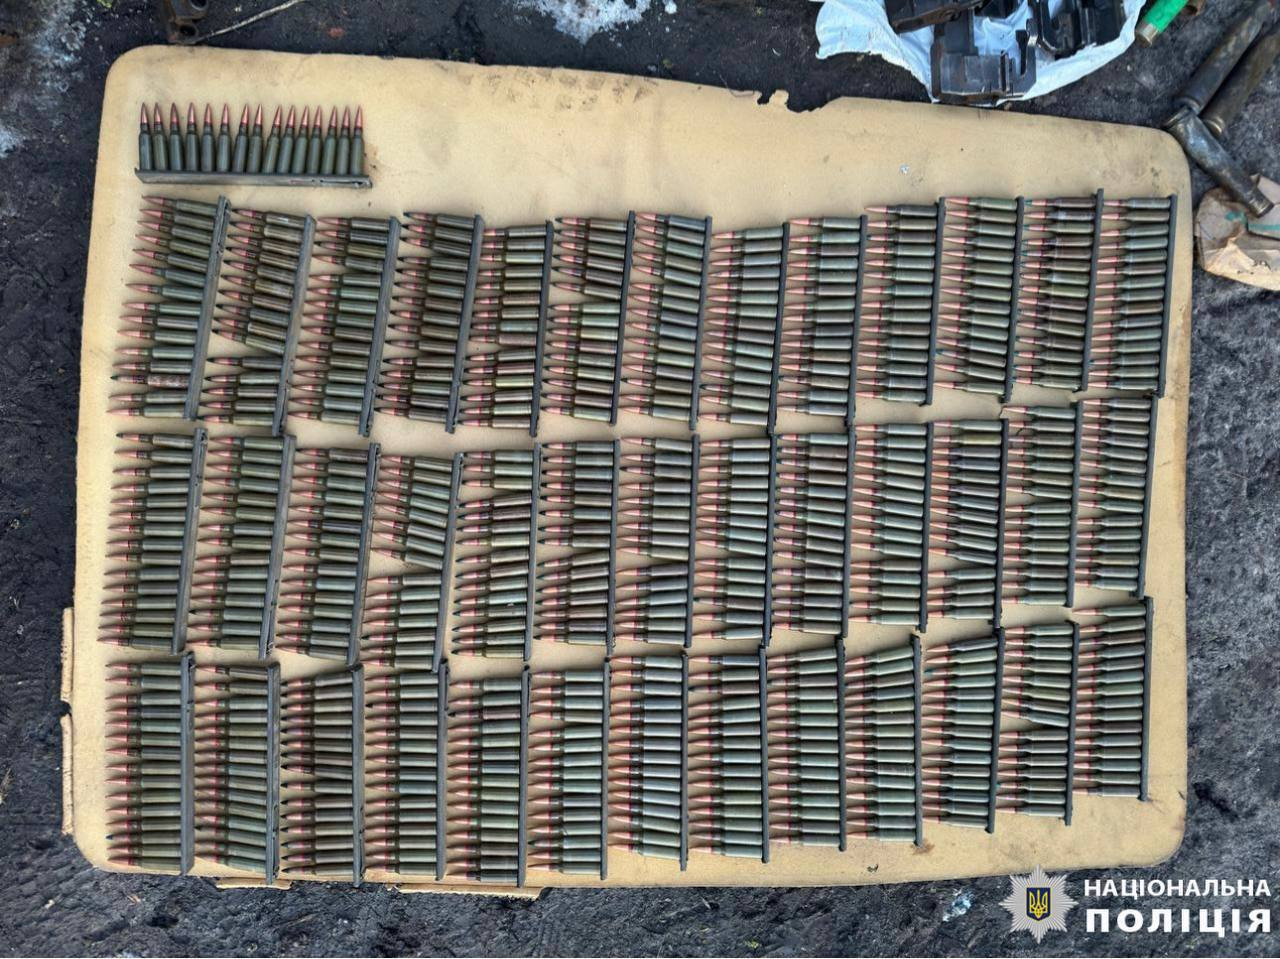 Житель Білоцерківського району зберігав вдома цілий арсенал зброї - 1 - зображення